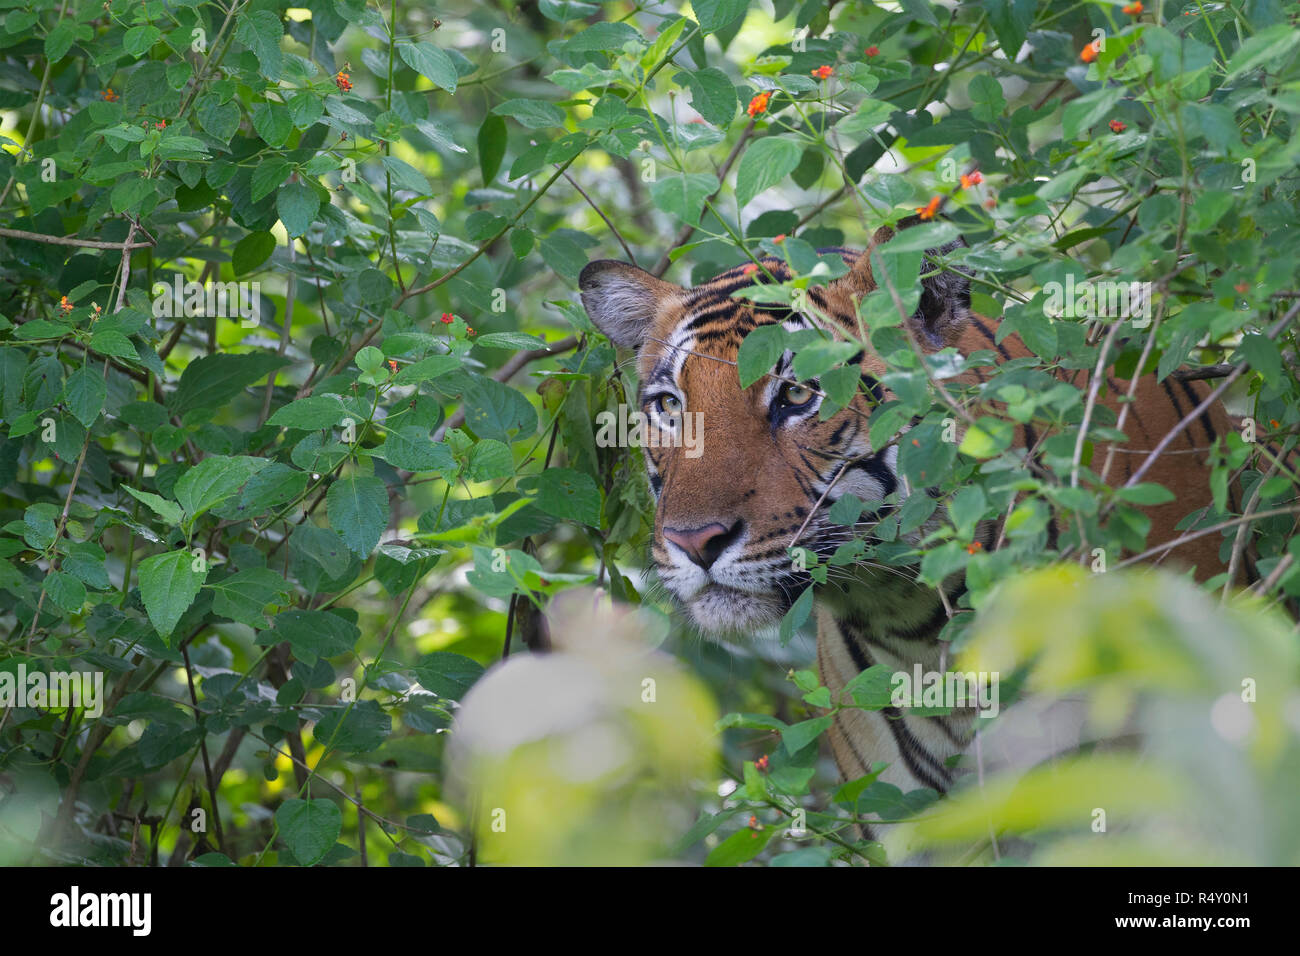 Eine männliche Tiger peering out von lantana - nagarhole Nationalpark, Indien Stockfoto